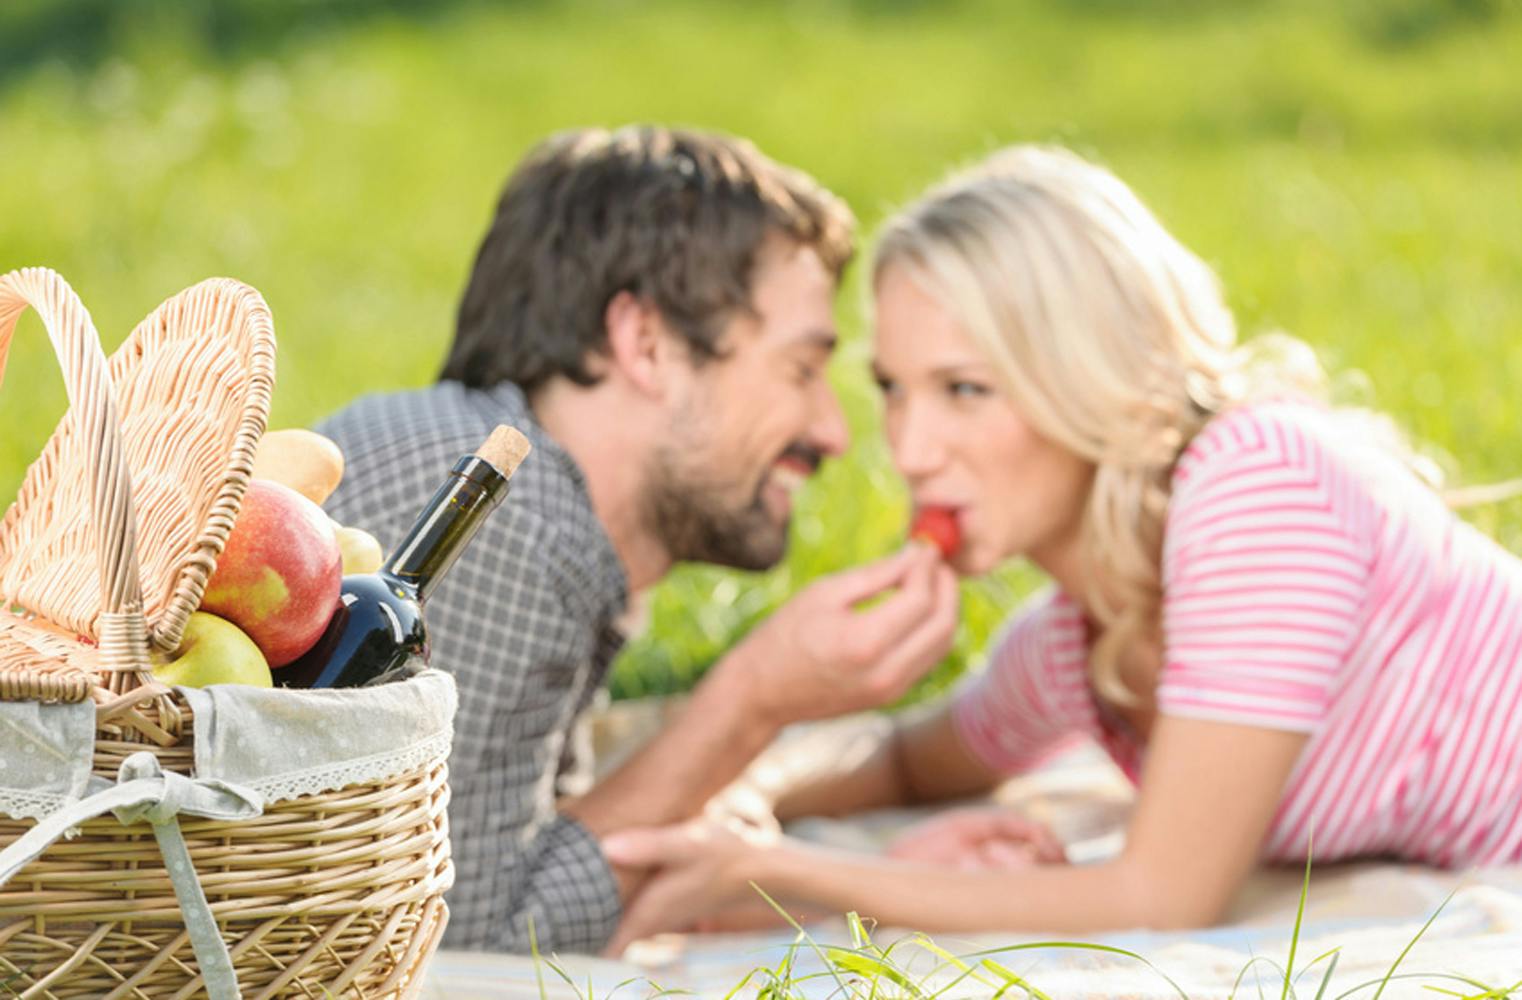 Romantisches Picknick | Innviertler Schmankerl genießen